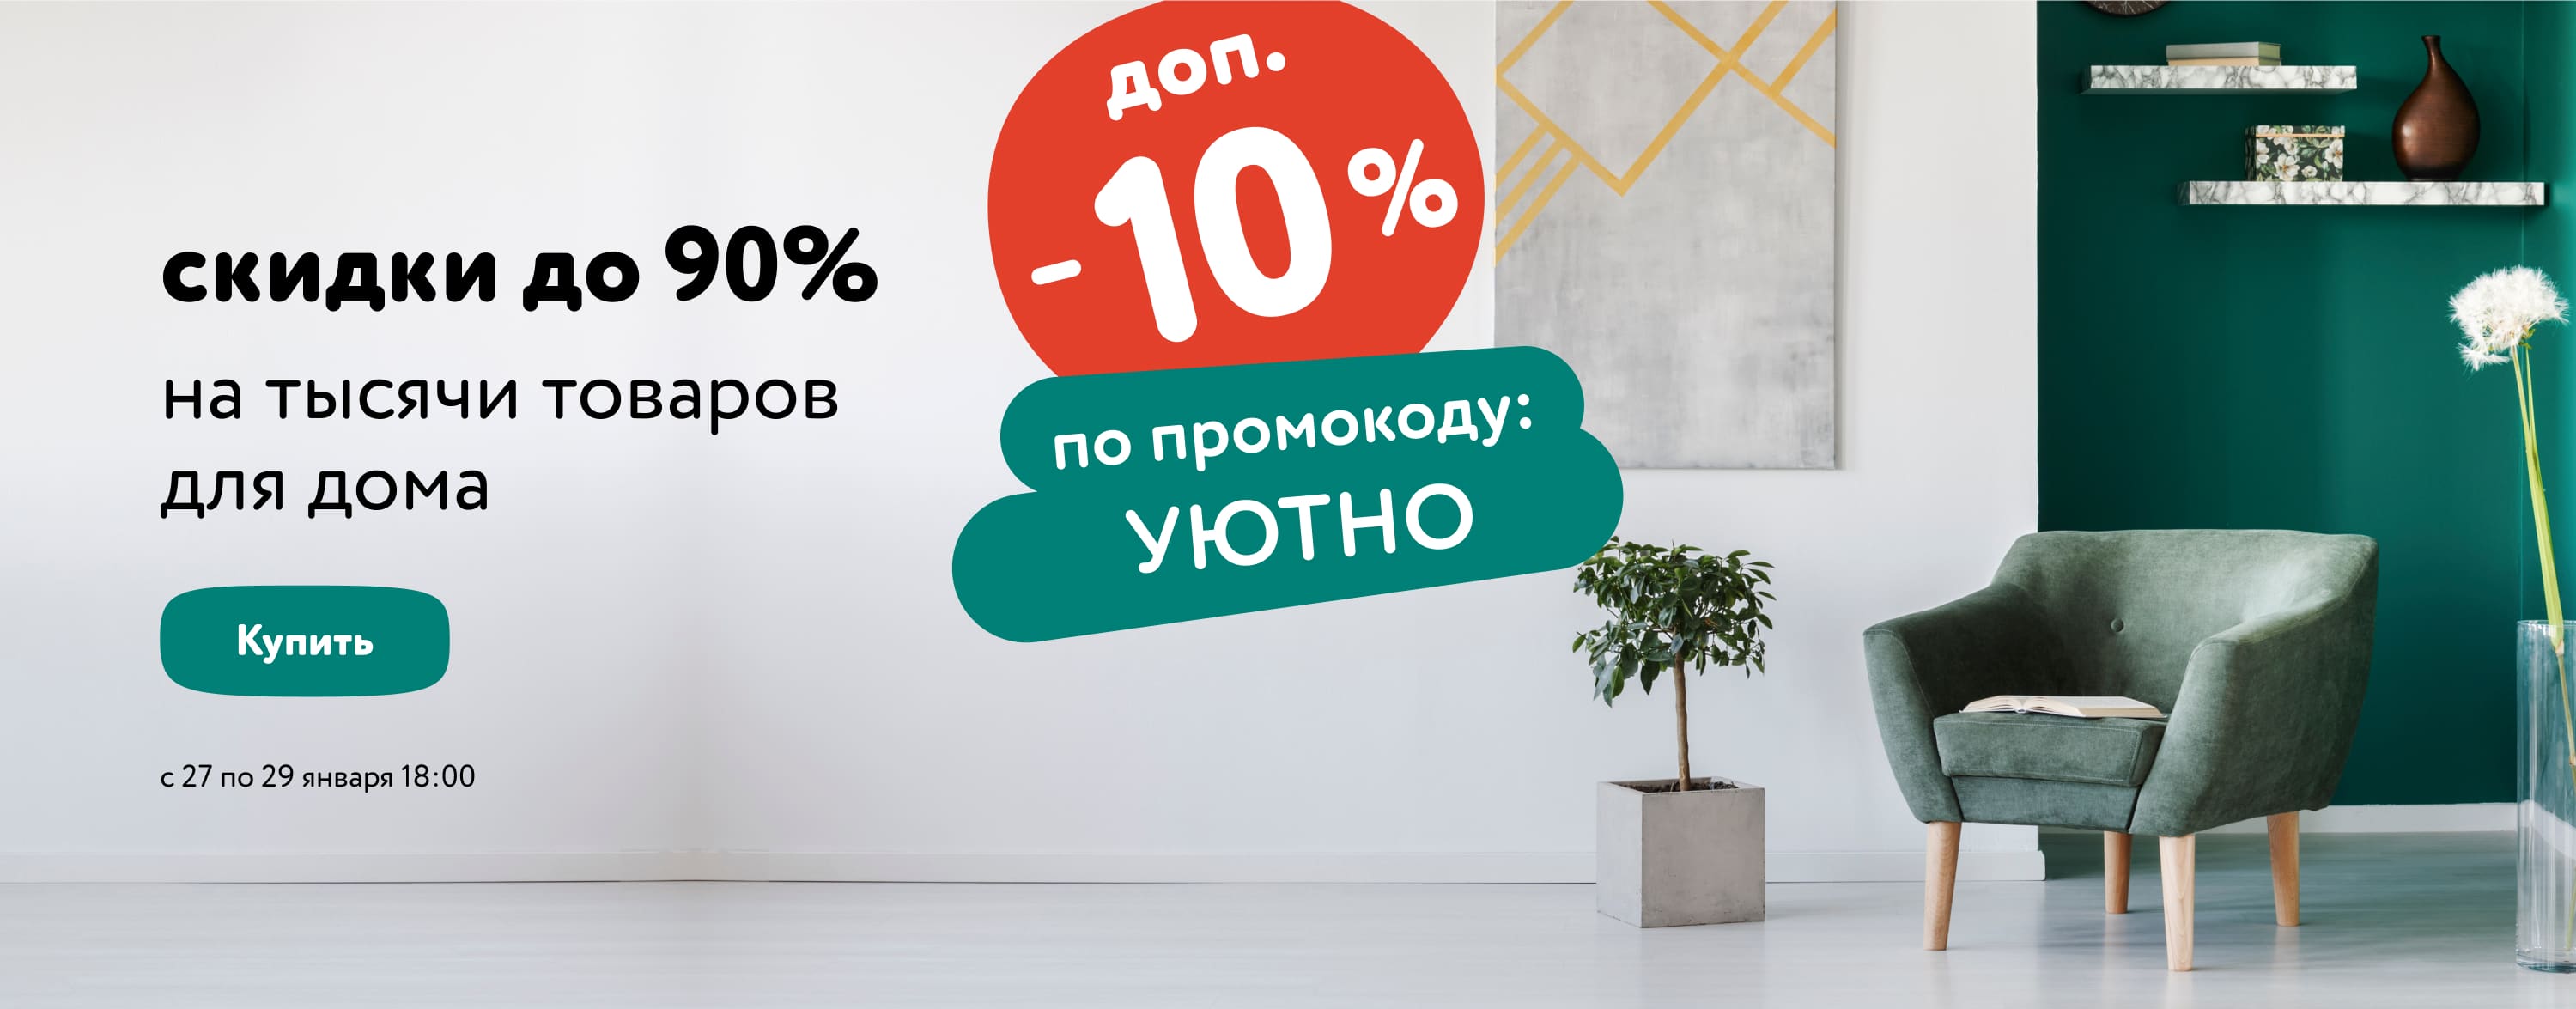 Доп. скидка 10% по промокоду на товары для дома (УЮТНО) (статика+категории)